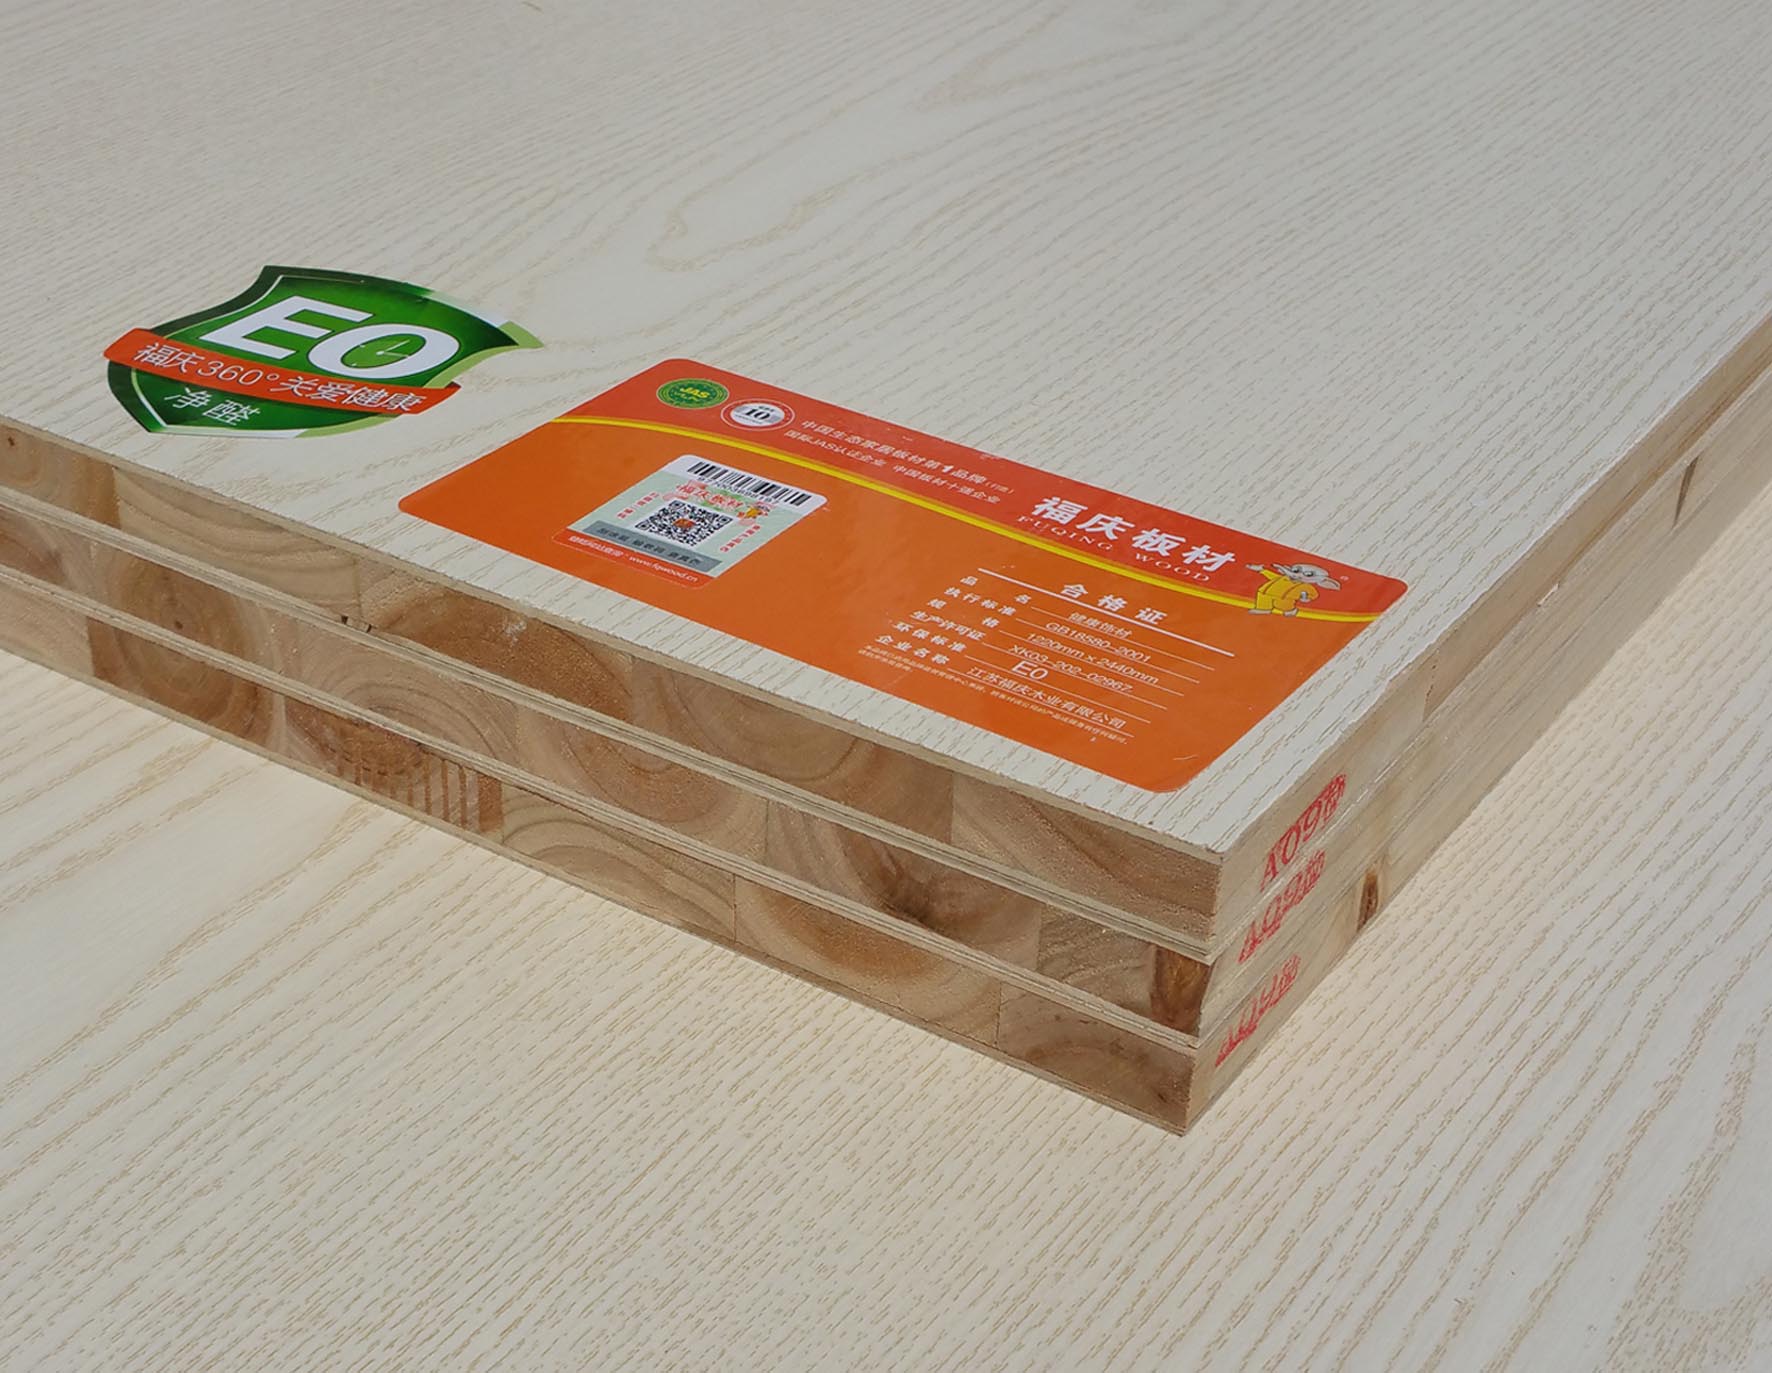 供应板材十大品牌福庆杉木整拼生态板 生态板 杉木生态板 福庆板材 生态板价格 生态板品牌